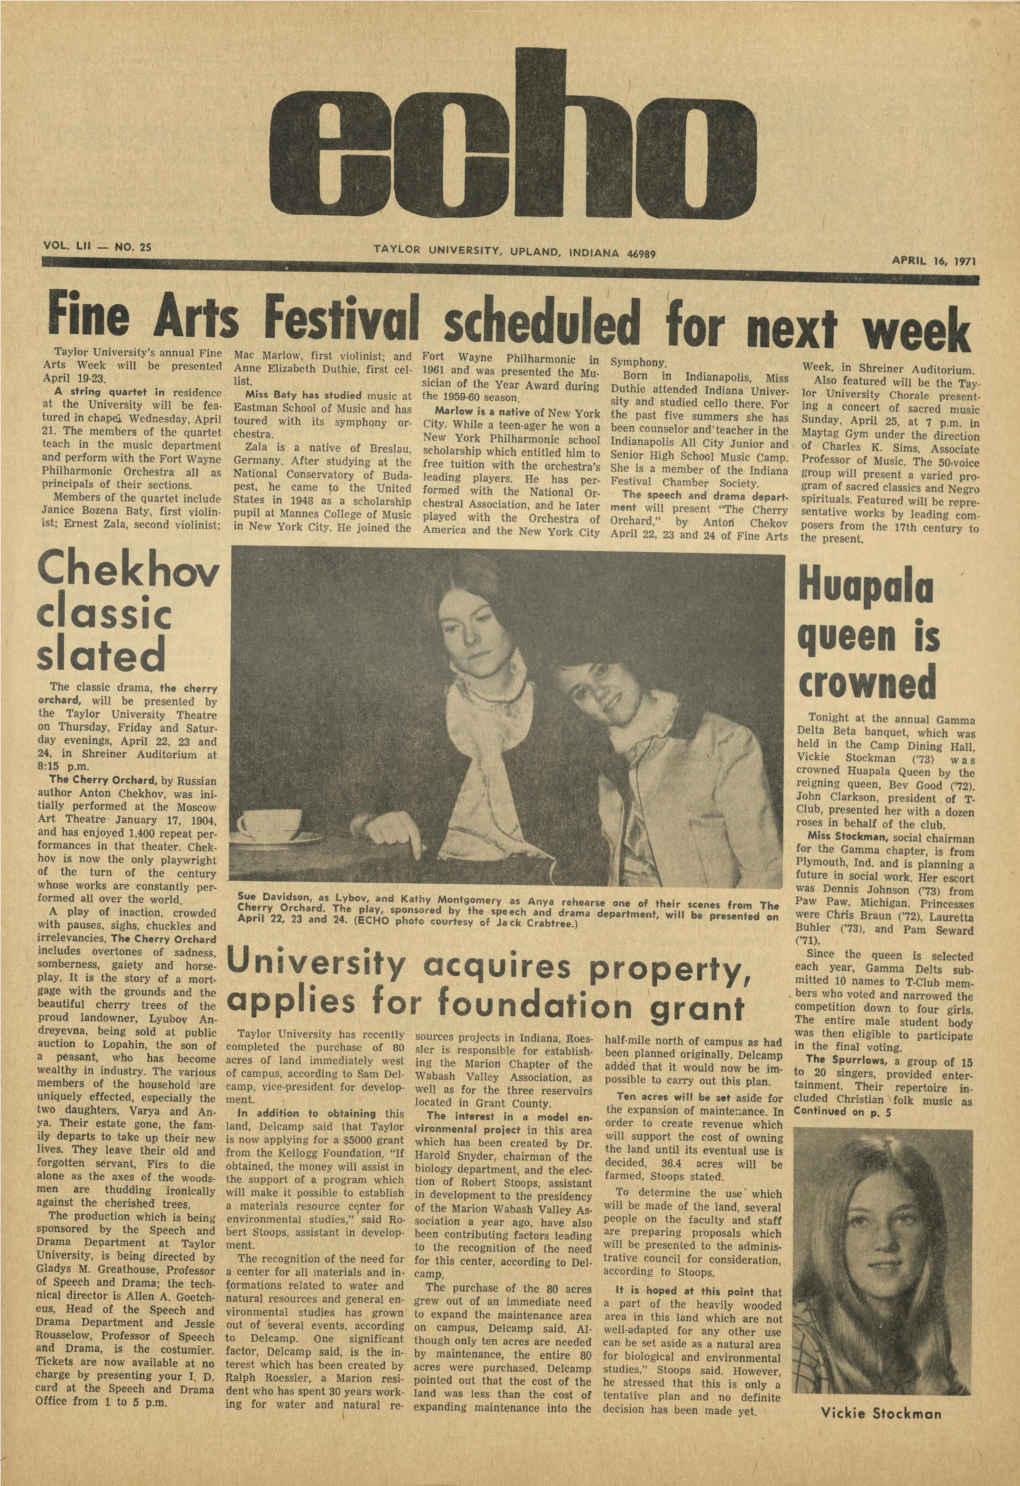 The Echo: April 16, 1971